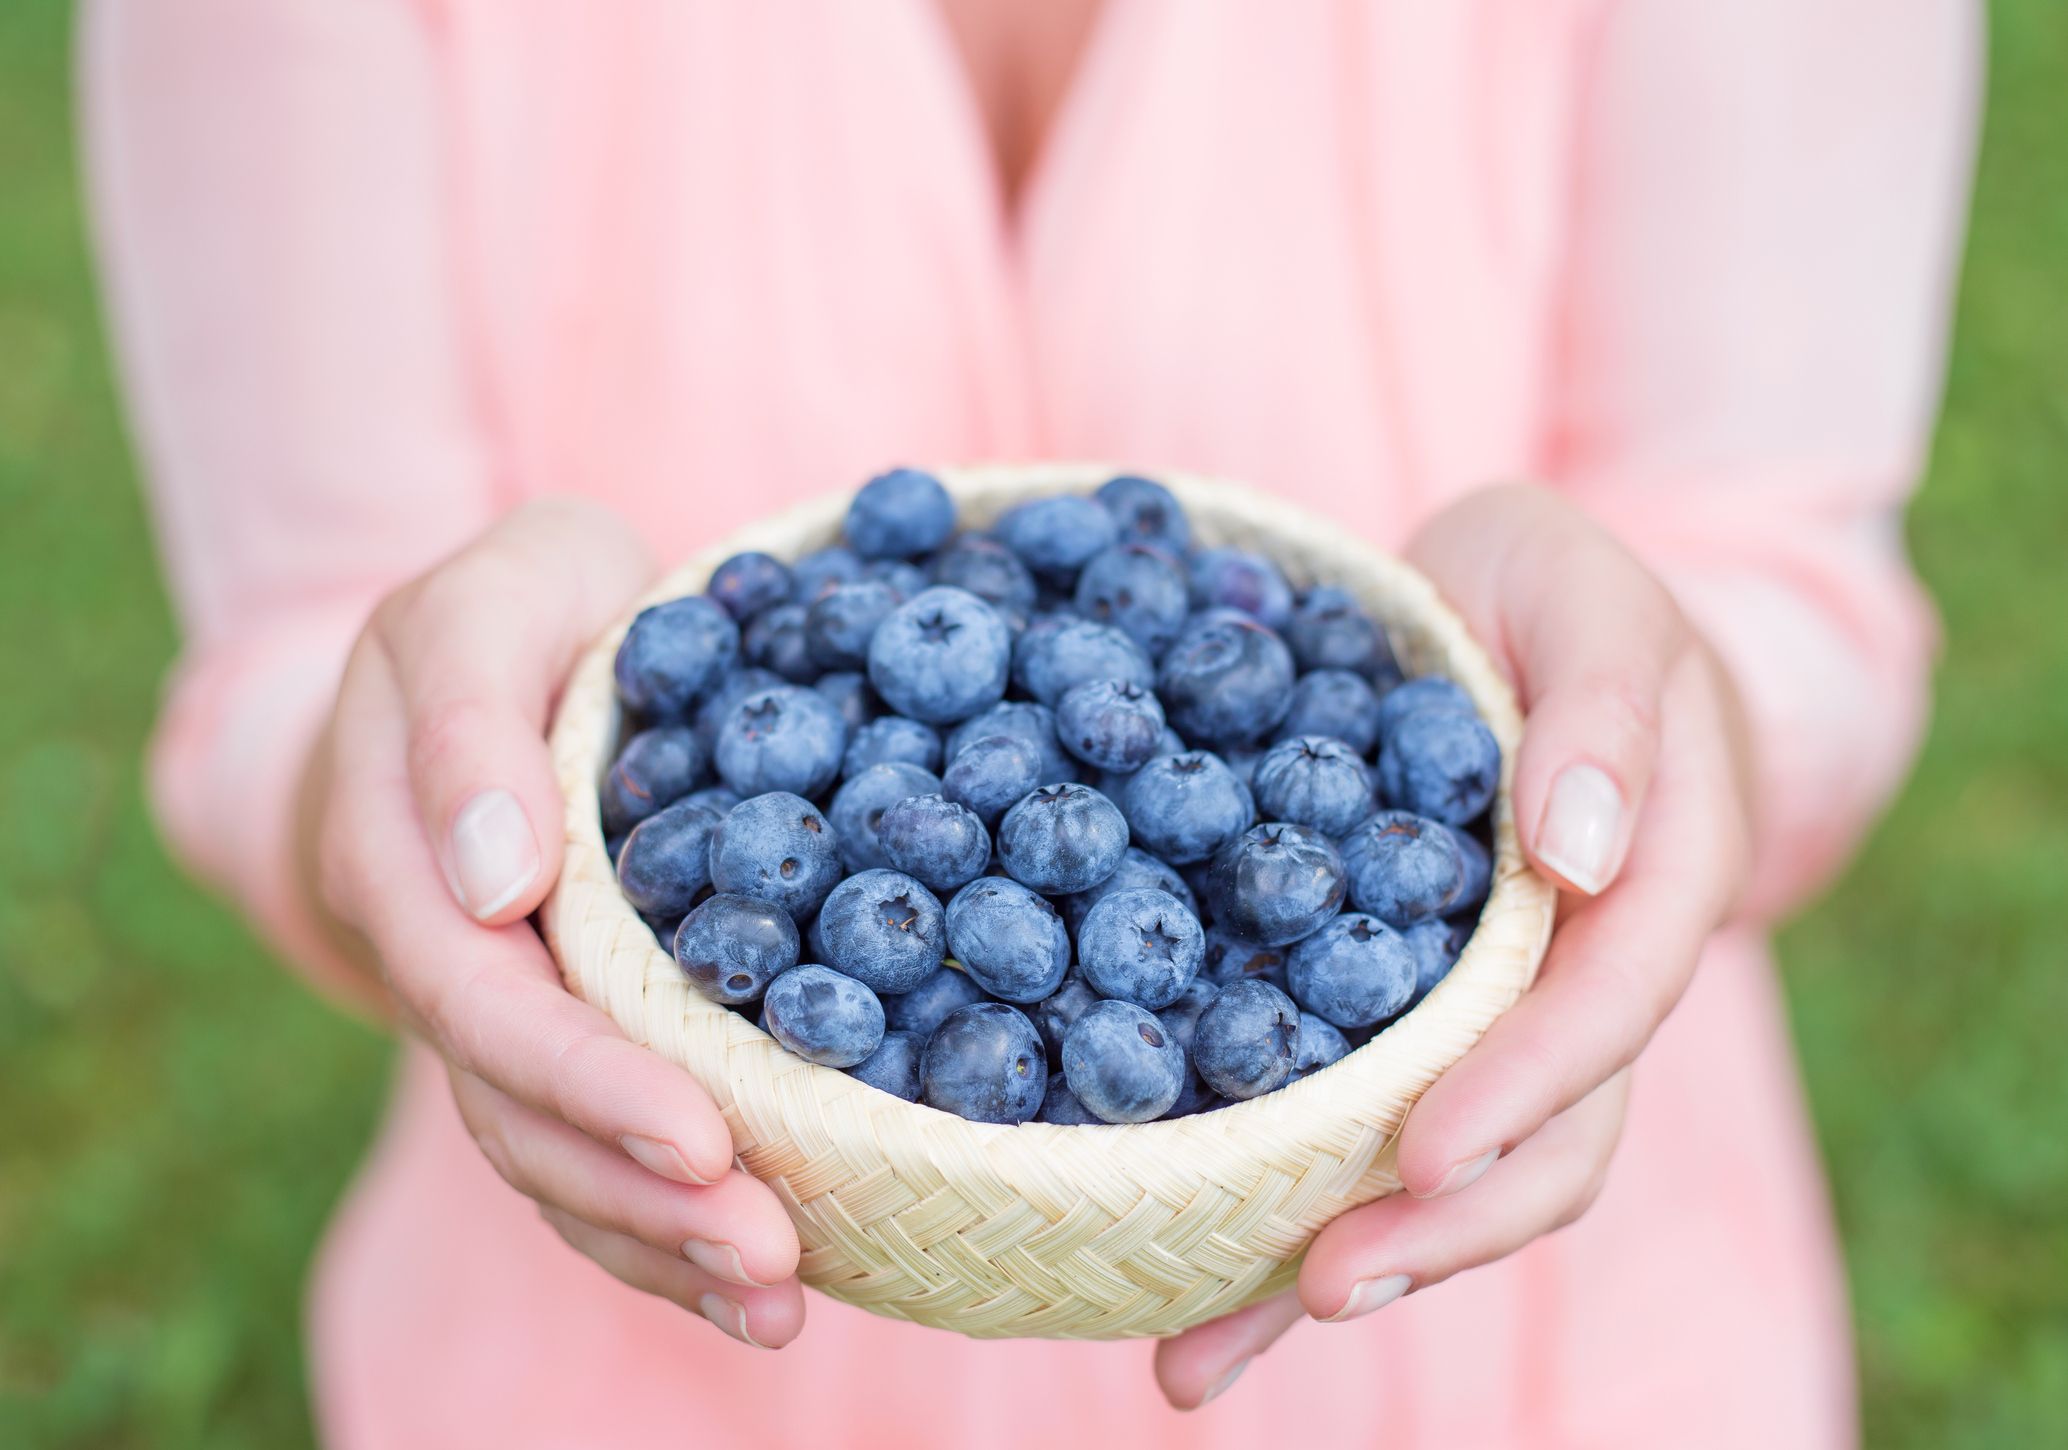 Try Blueberries for Bladder Health